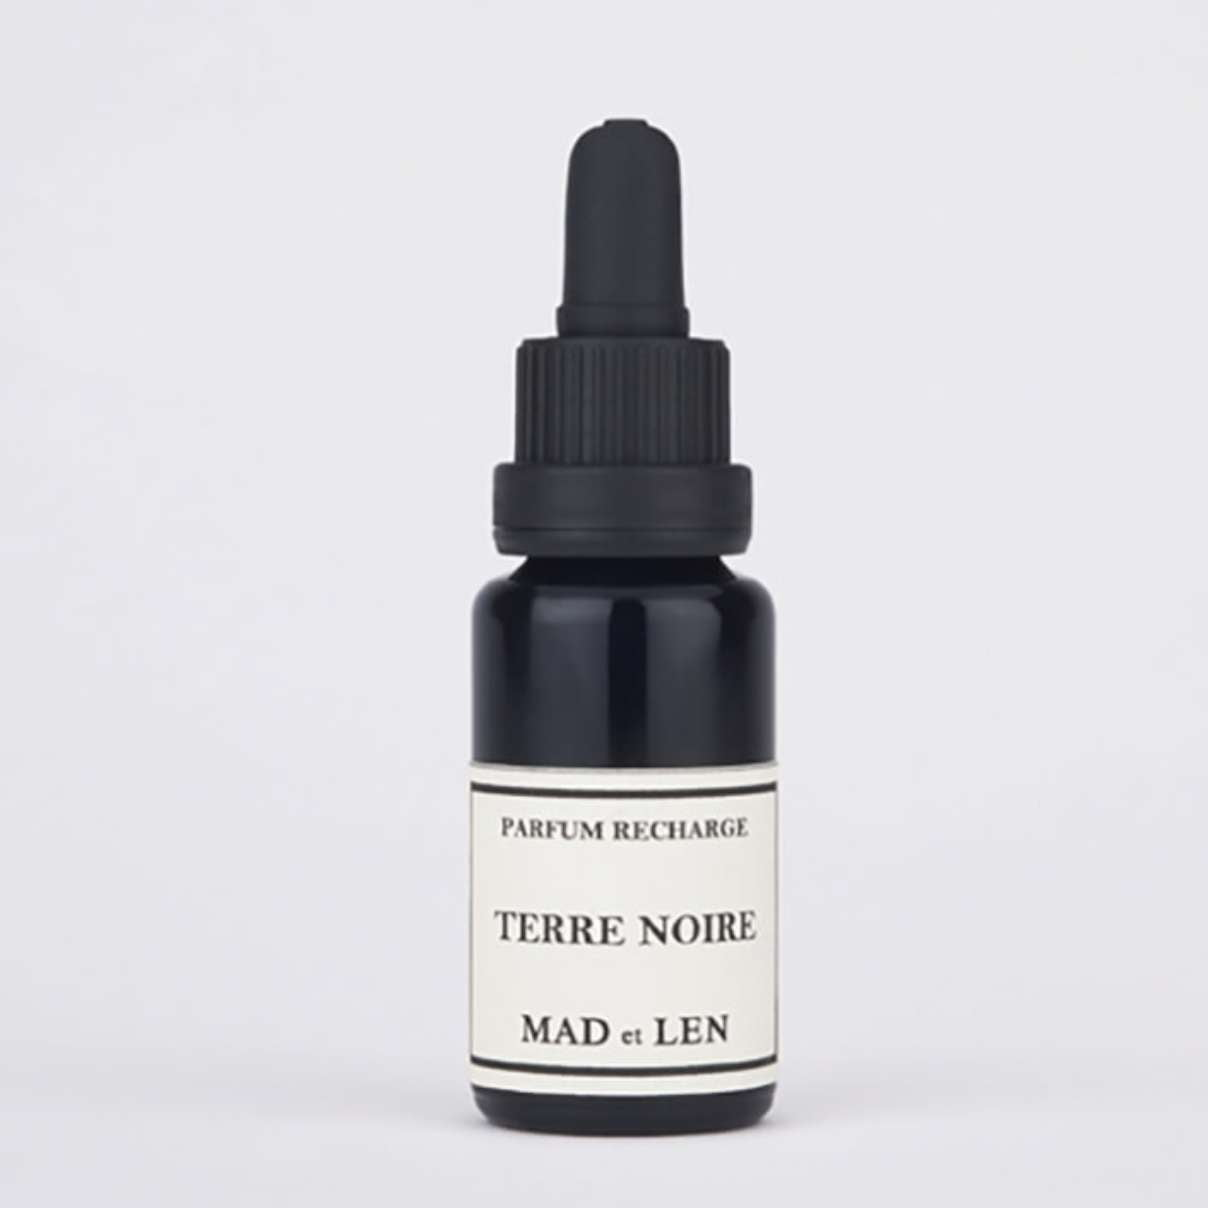 Terra Noire - Mad et Len - INDIEHOUSE modern fragrances